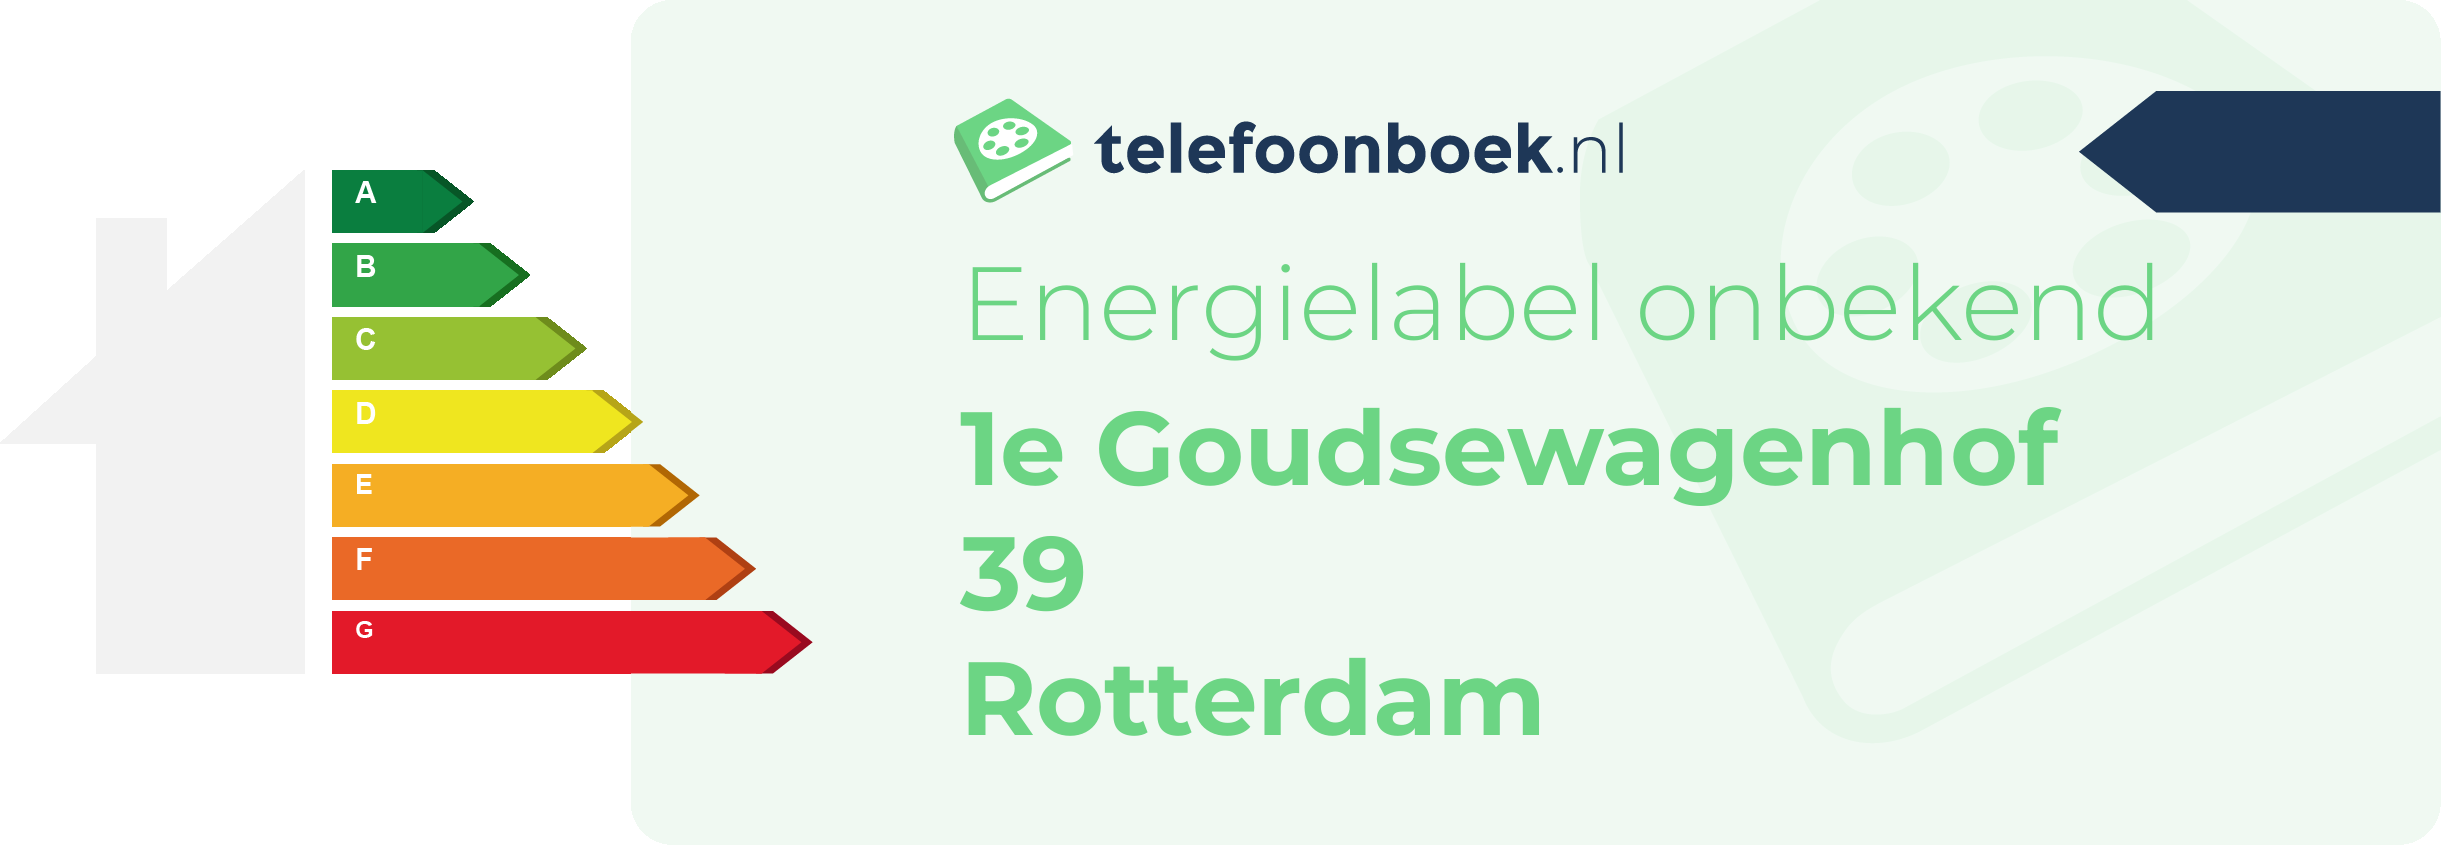 Energielabel 1e Goudsewagenhof 39 Rotterdam